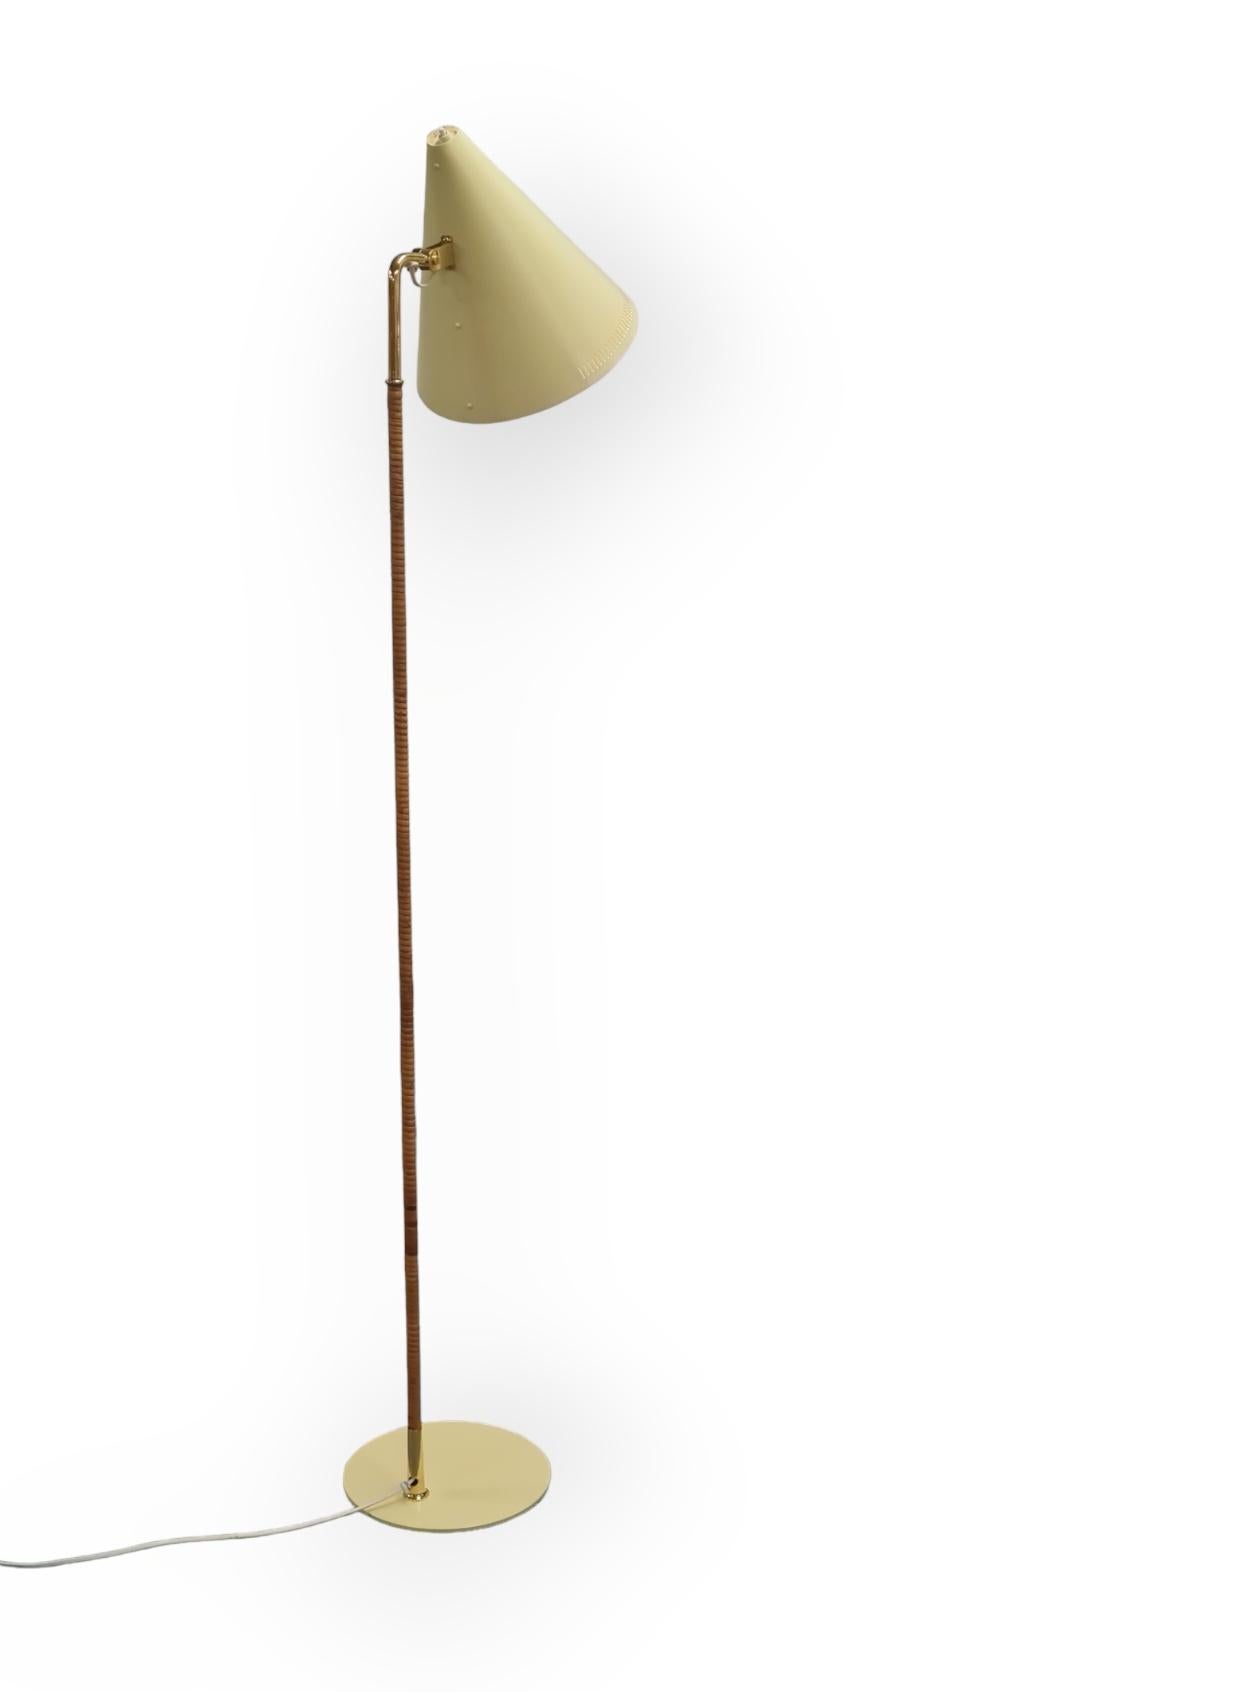 Scandinavian Modern Paavo Tynell Floor Lamp Model K10-10, Idman Oy For Sale